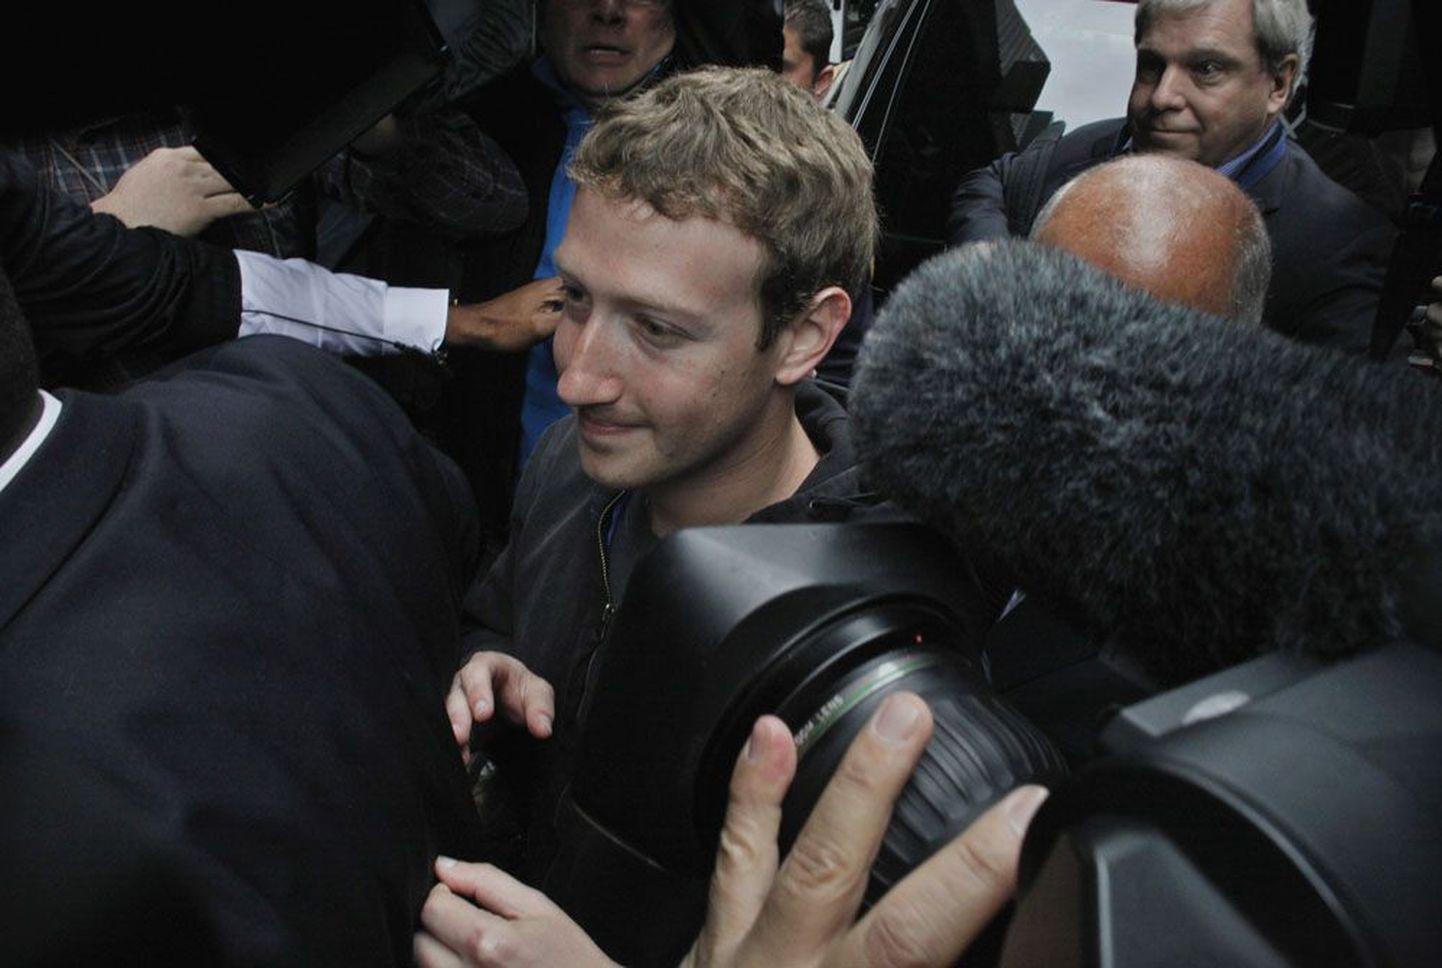 Eile oma 28. sünnipäeva pidanud Mark Zuckerberg lahkus New Yorgi hotellist turvameeste saatel. Mai algul algas esmasele avalikule aktsiamüügile eelnev tutvusringkäik investorite juurde.